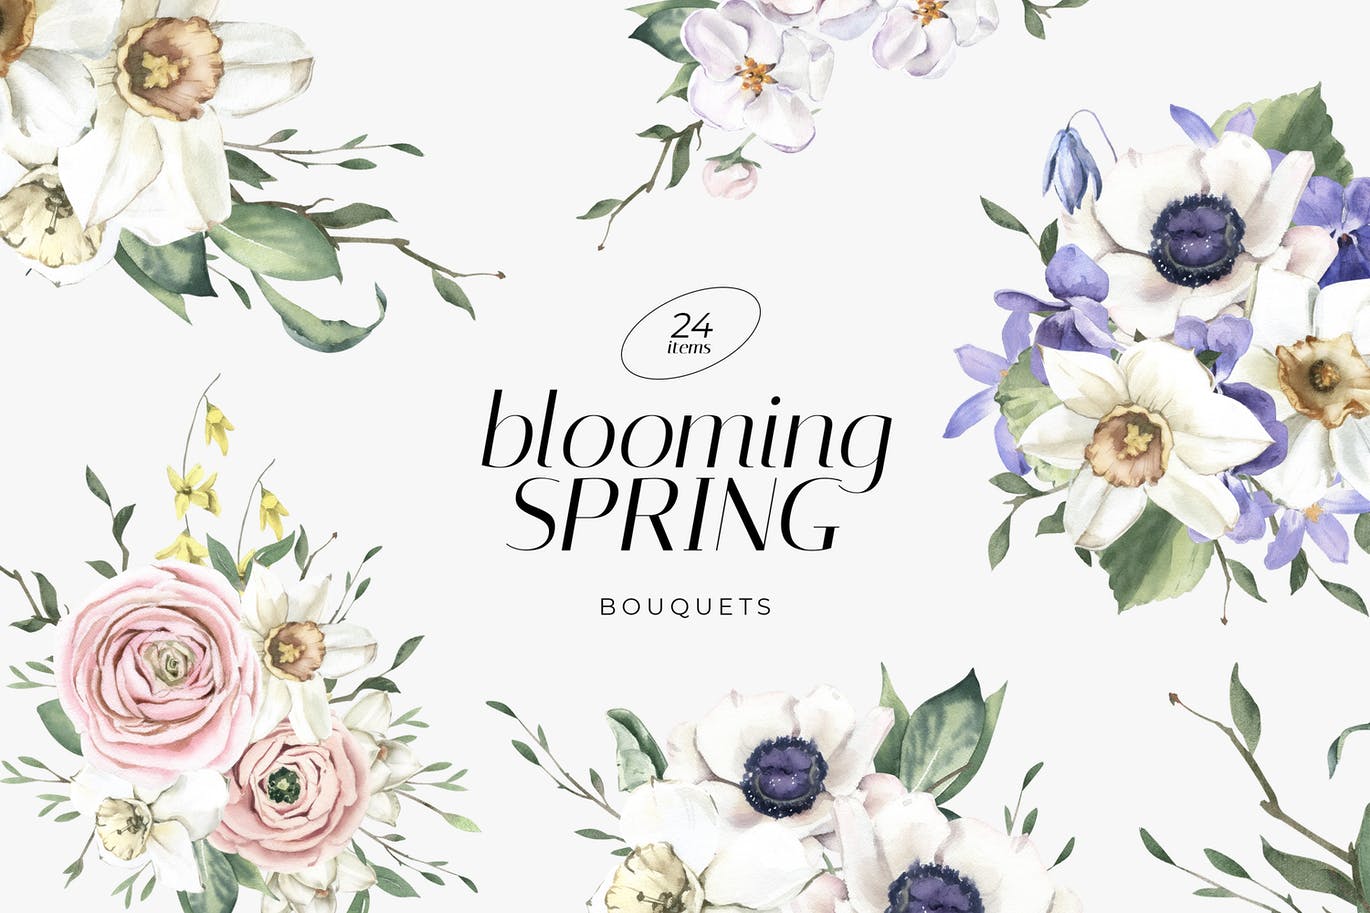 时尚高端清新优雅多用途的盛开春天手绘水彩花朵花卉插画集合